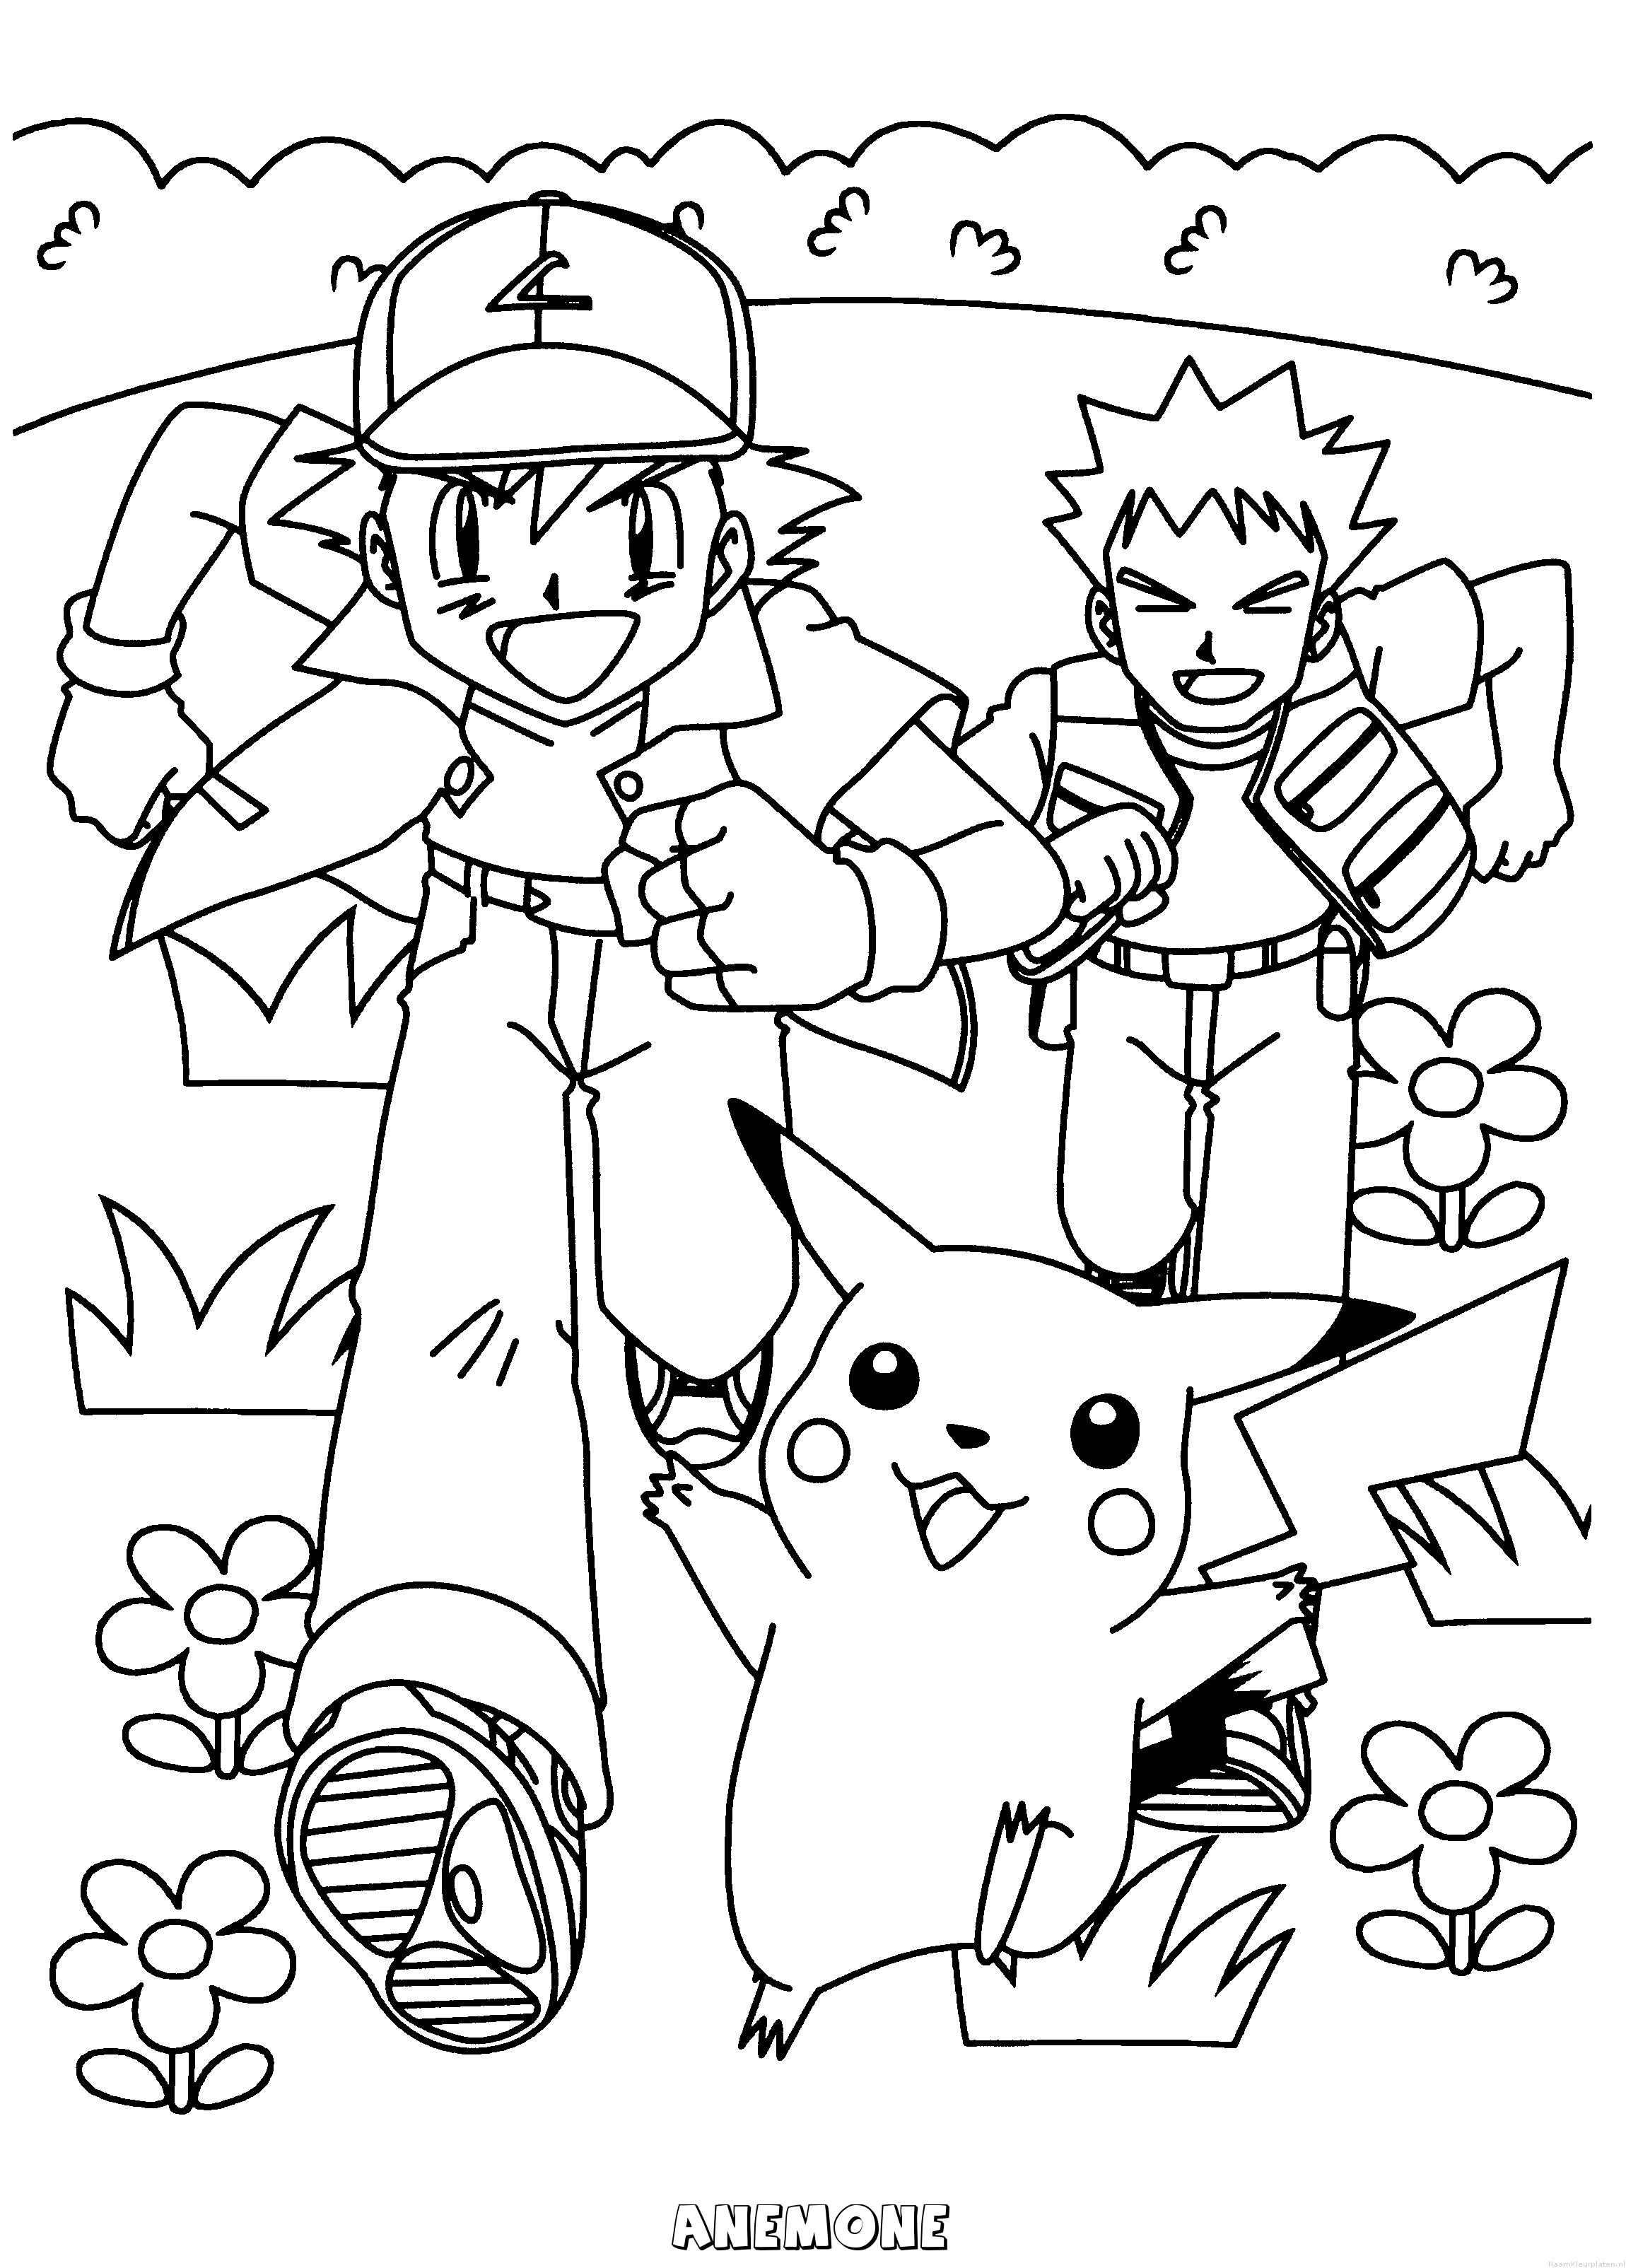 Anemone pokemon